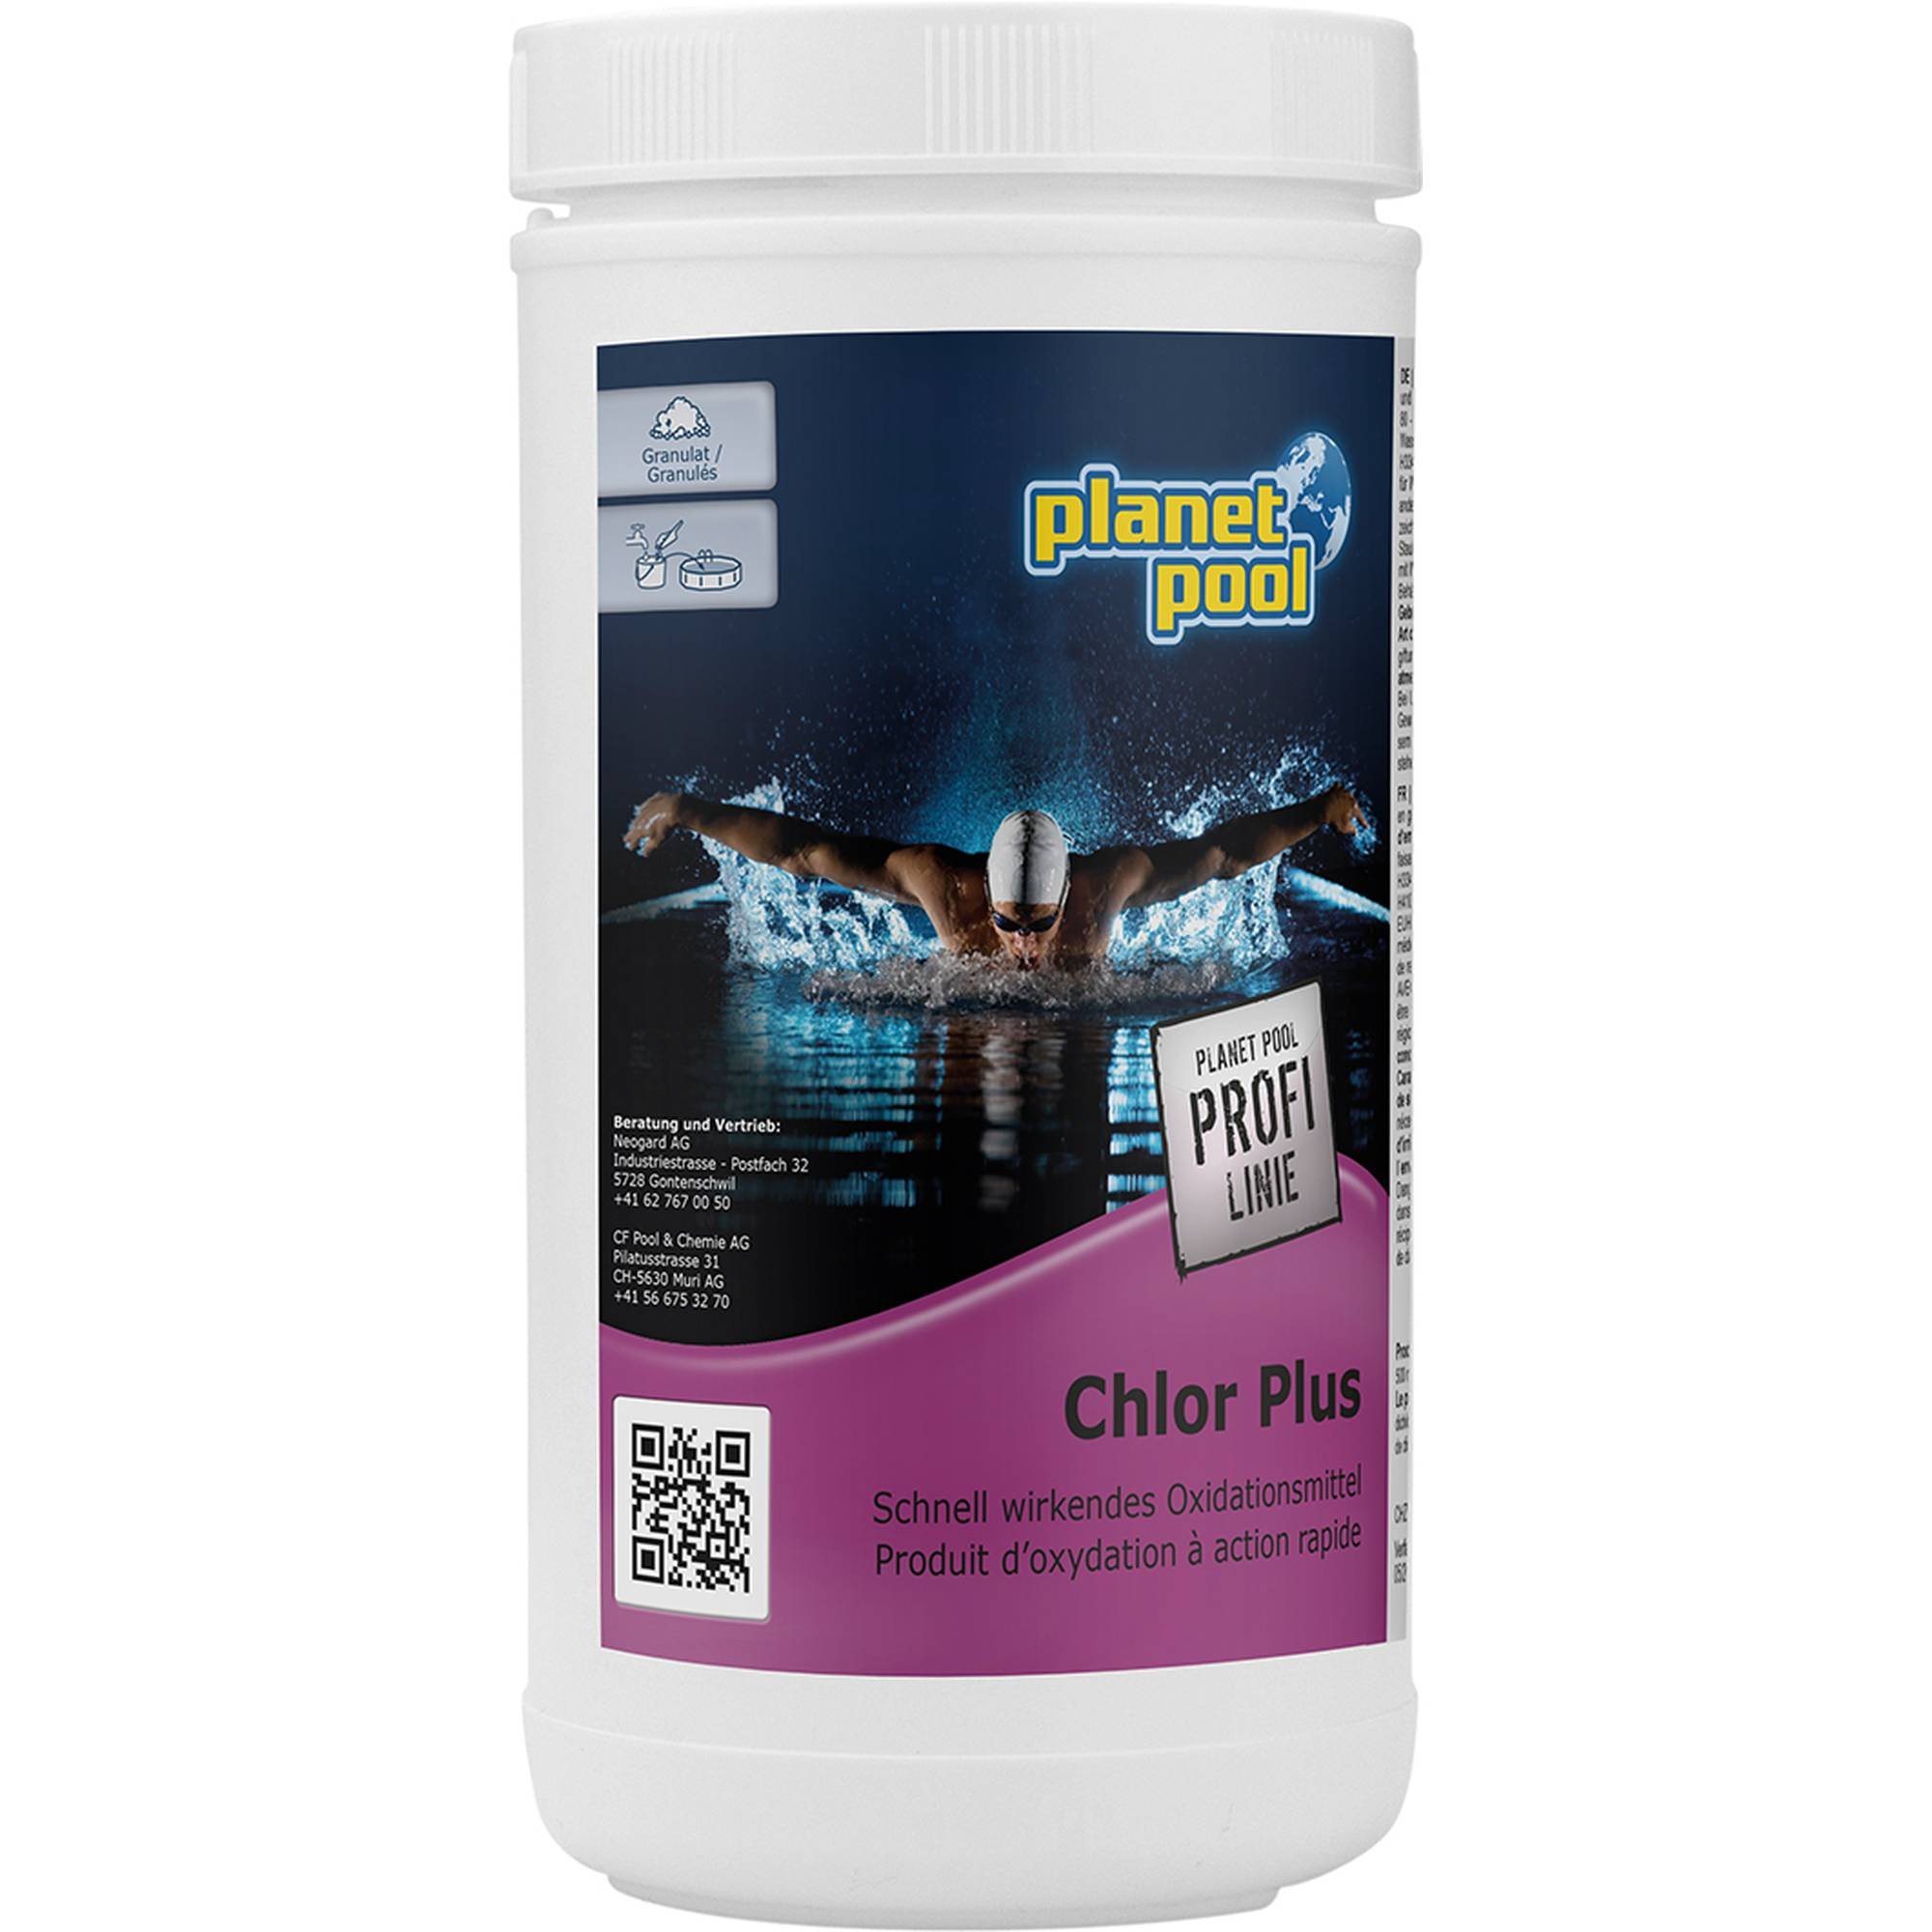 PLANET POOL - Profi Linie | Chlor Plus 1 kg